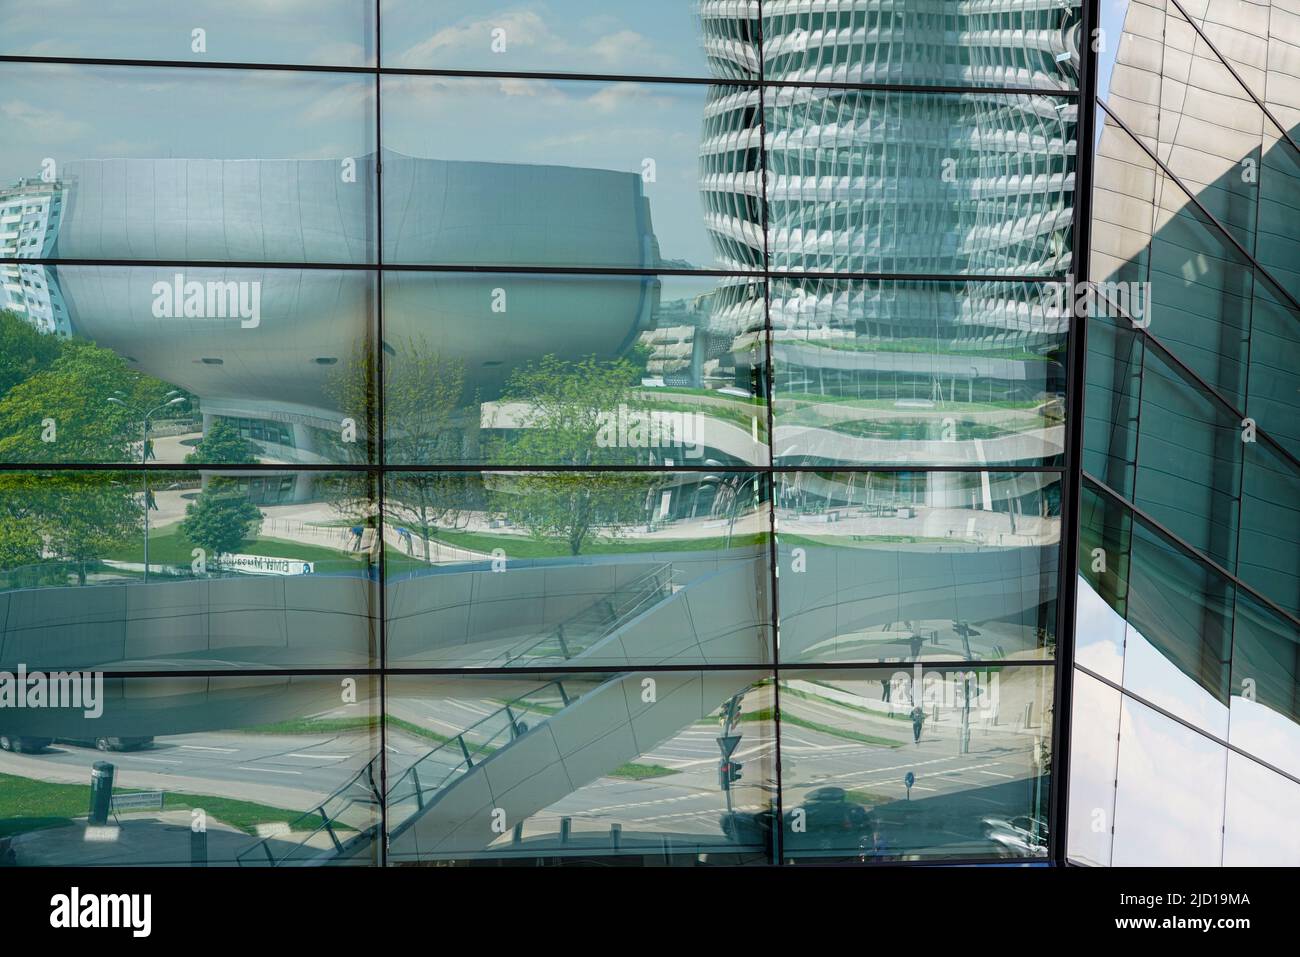 Reflexiones de la Torre BMW, el Museo BMW y el Puente Trias en la fachada de cristal de BMW World Munich, Alemania, 9.5.22 Foto de stock